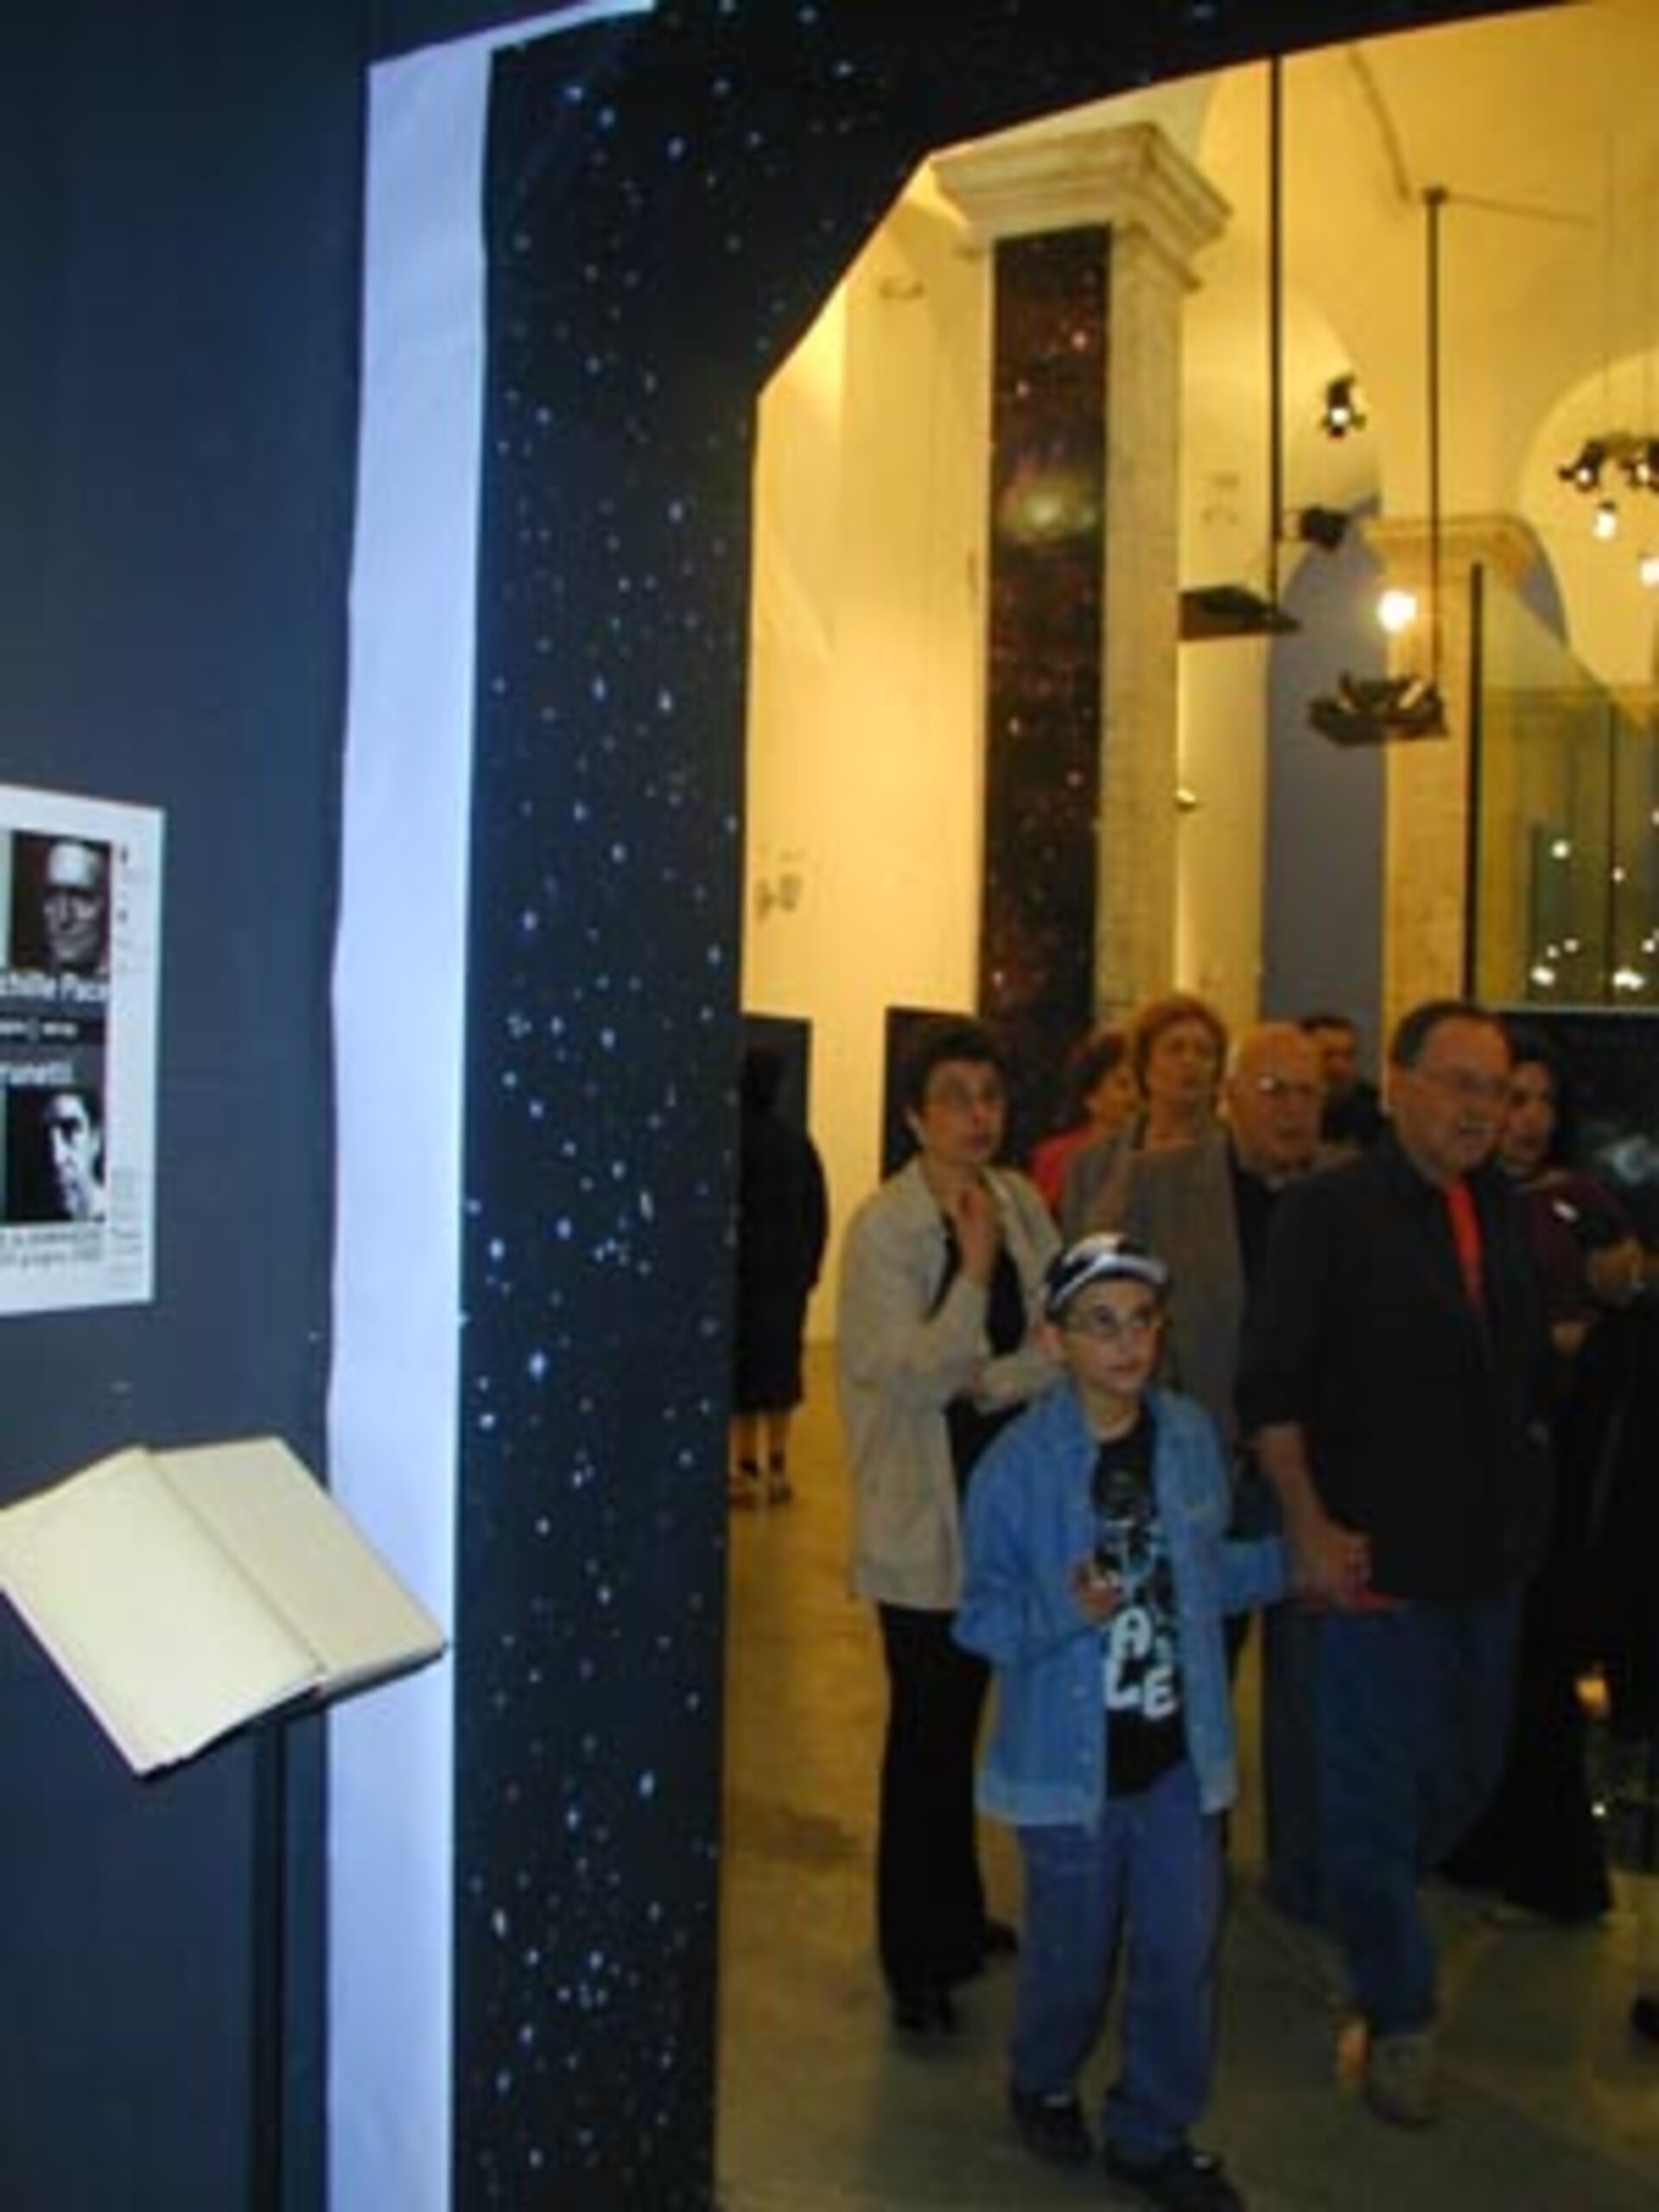 Sponsored by ESA, the art exhibition 'Doppio6Verso' had taken place on June 2002 at Scuderie Aldobrandini in Frascati, near Rome